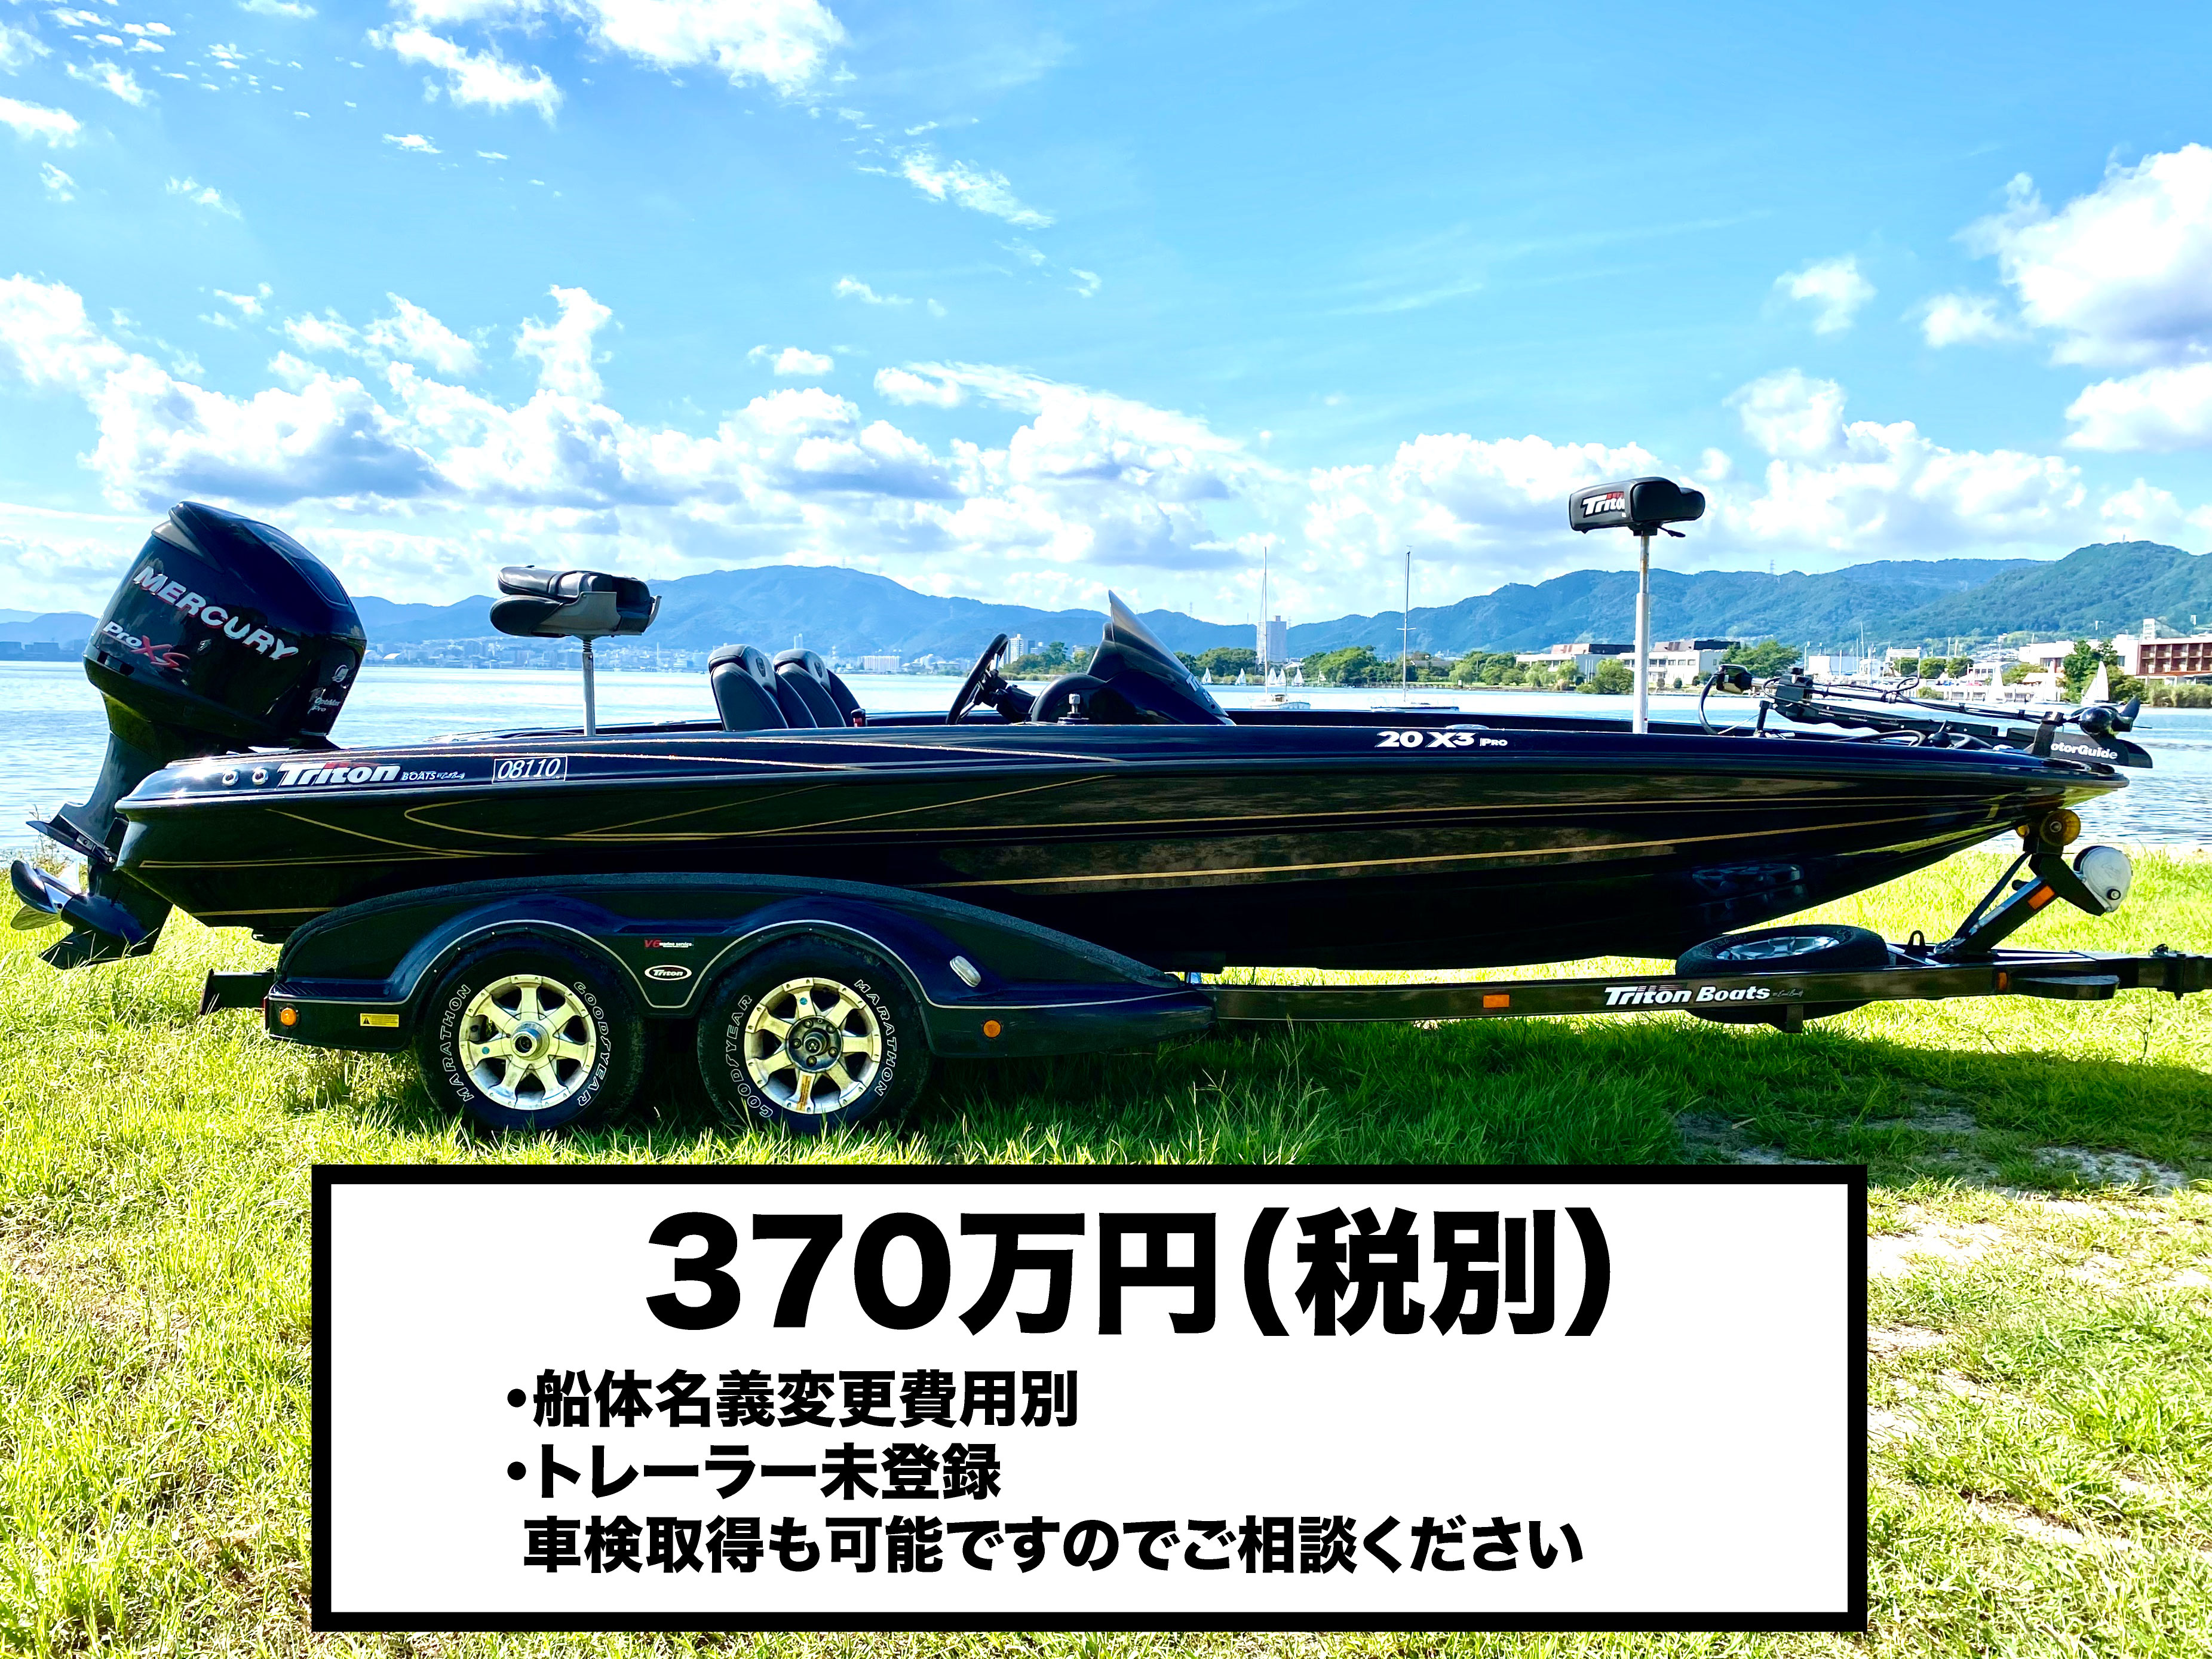 中古・新艇バスボート バスボートジャパン あなたの夢を実現 バスボートに関することならおまかせ